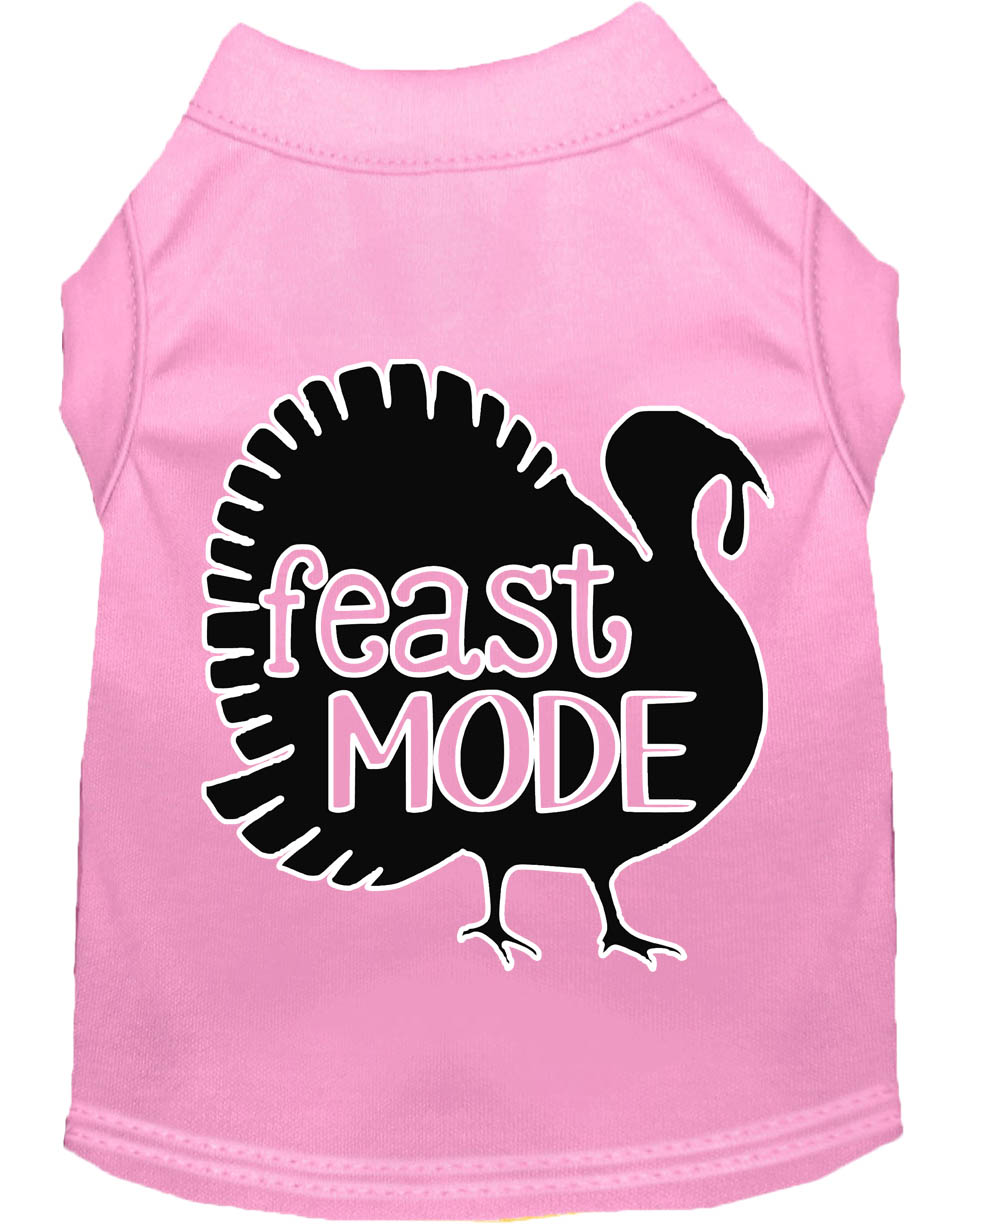 Feast Mode Screen Print Dog Shirt Light Pink Lg